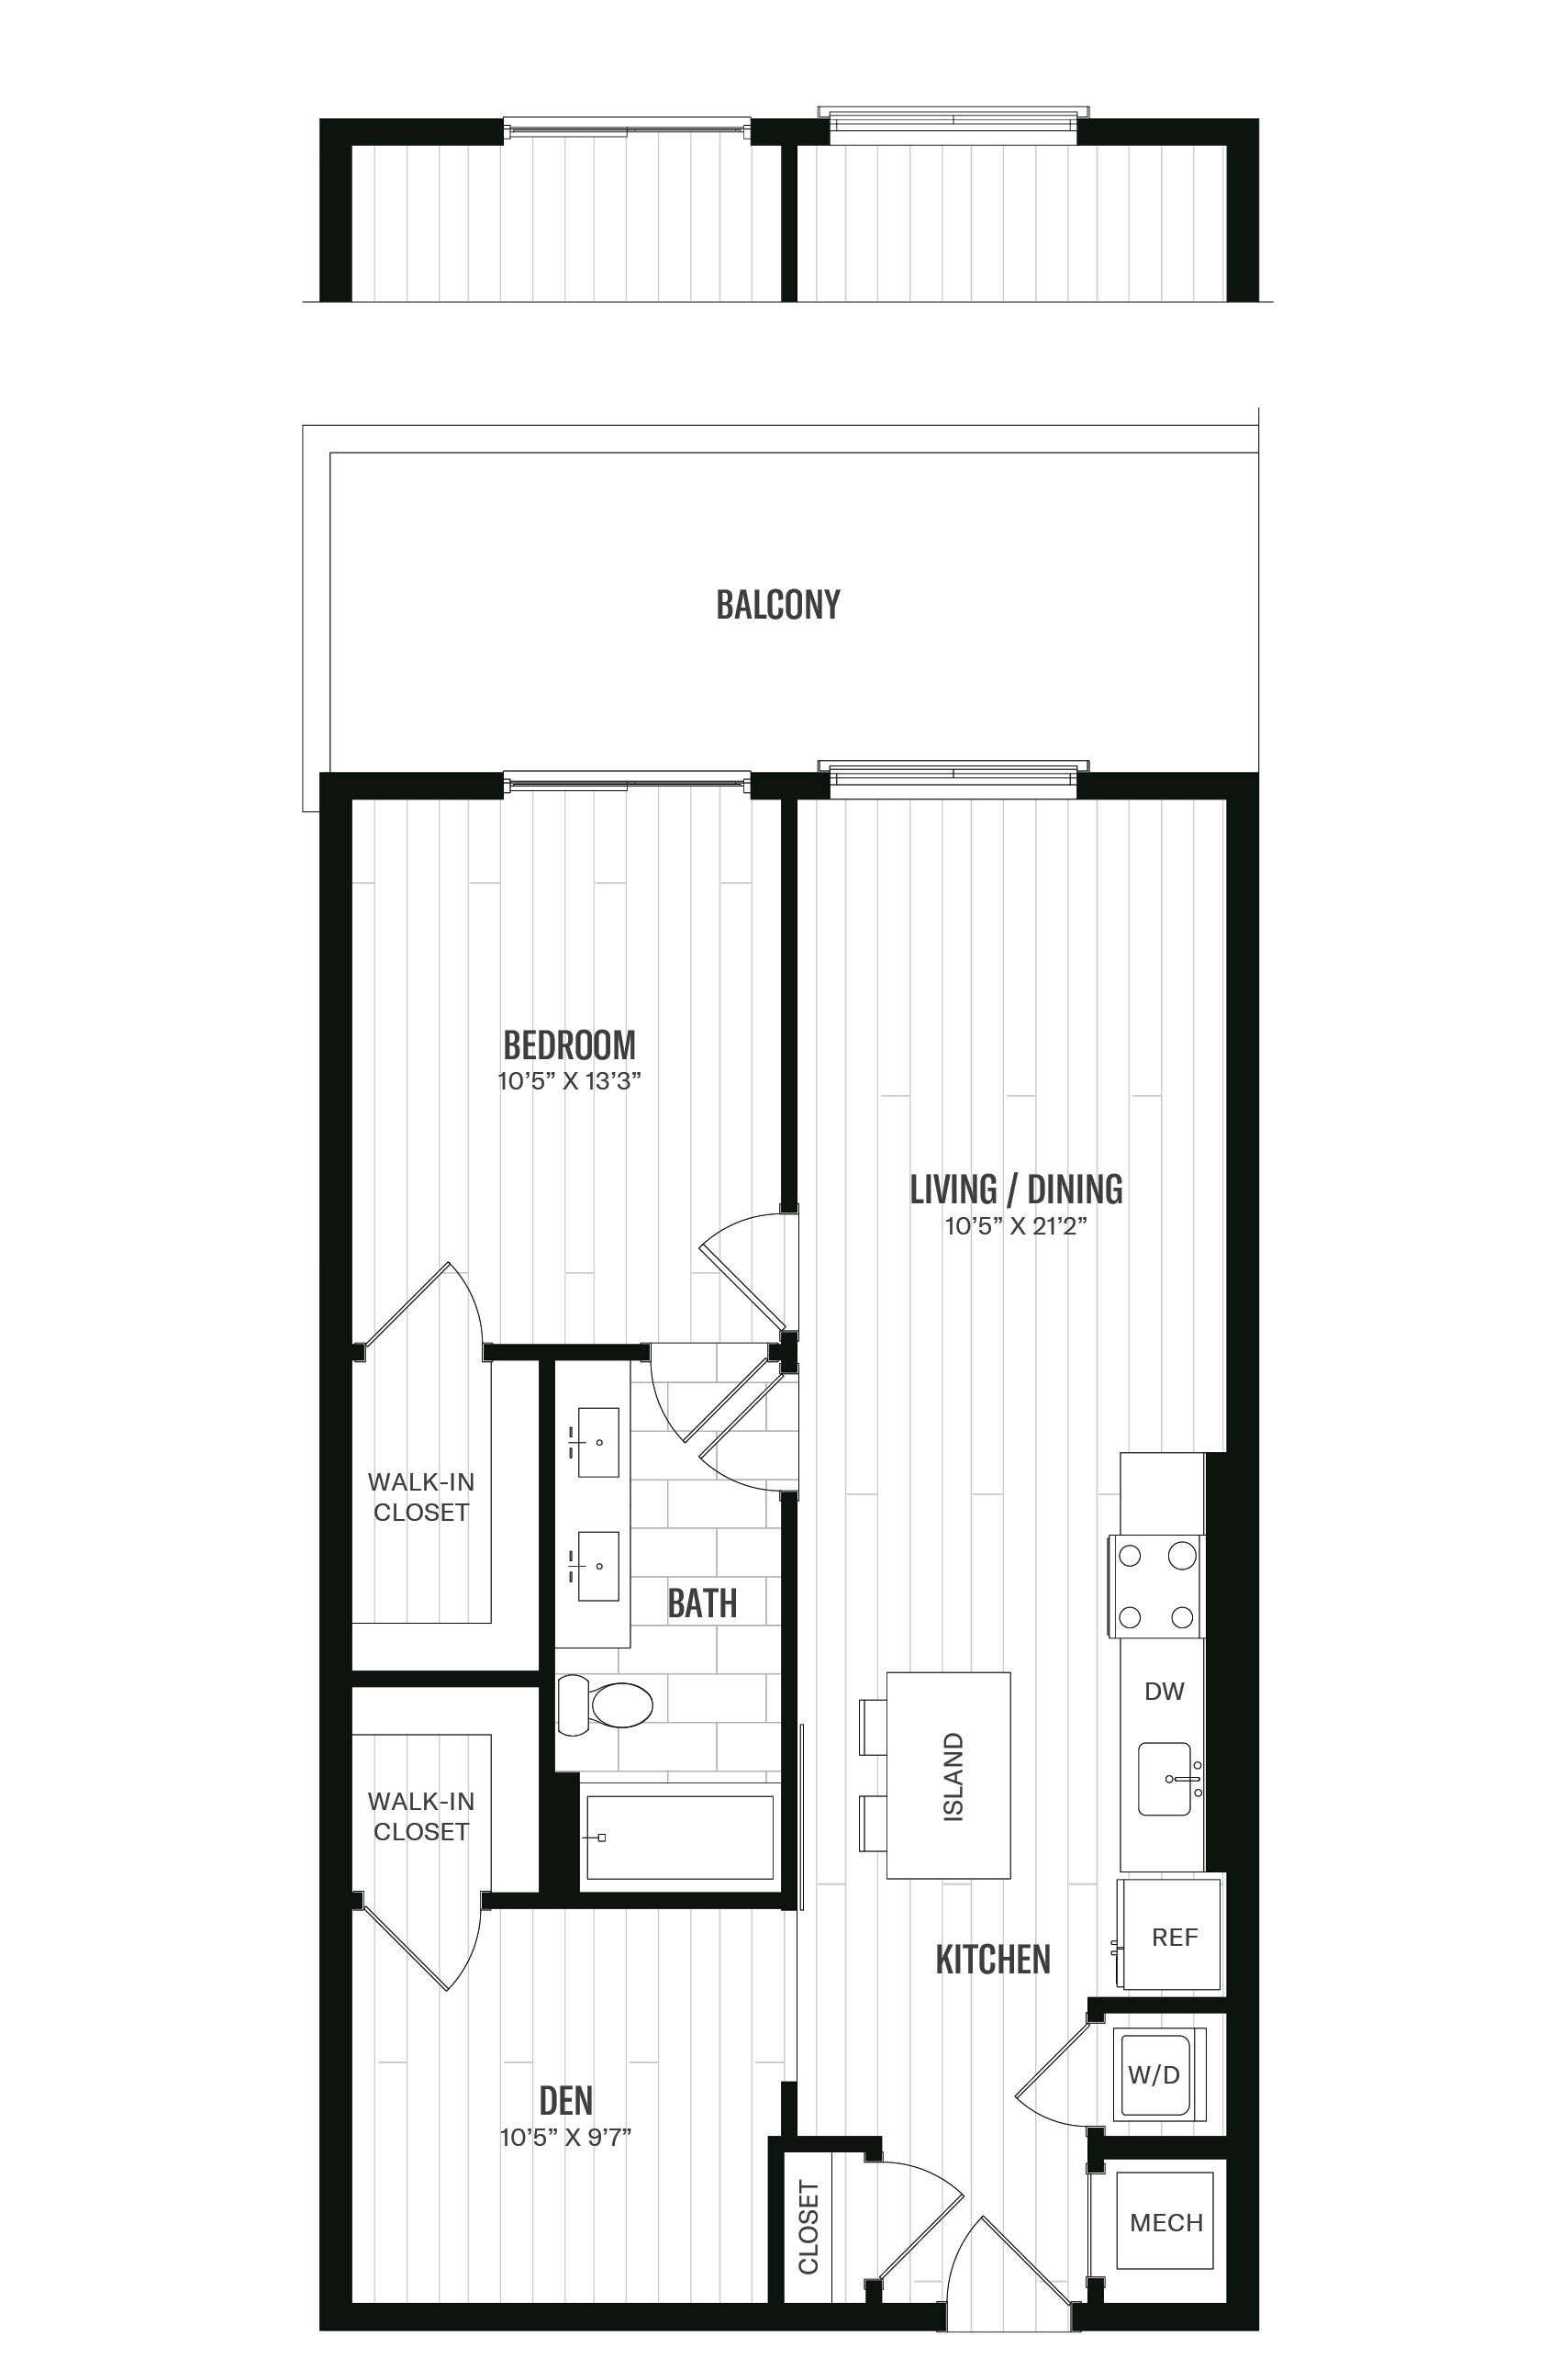 Floorplan image of unit 634